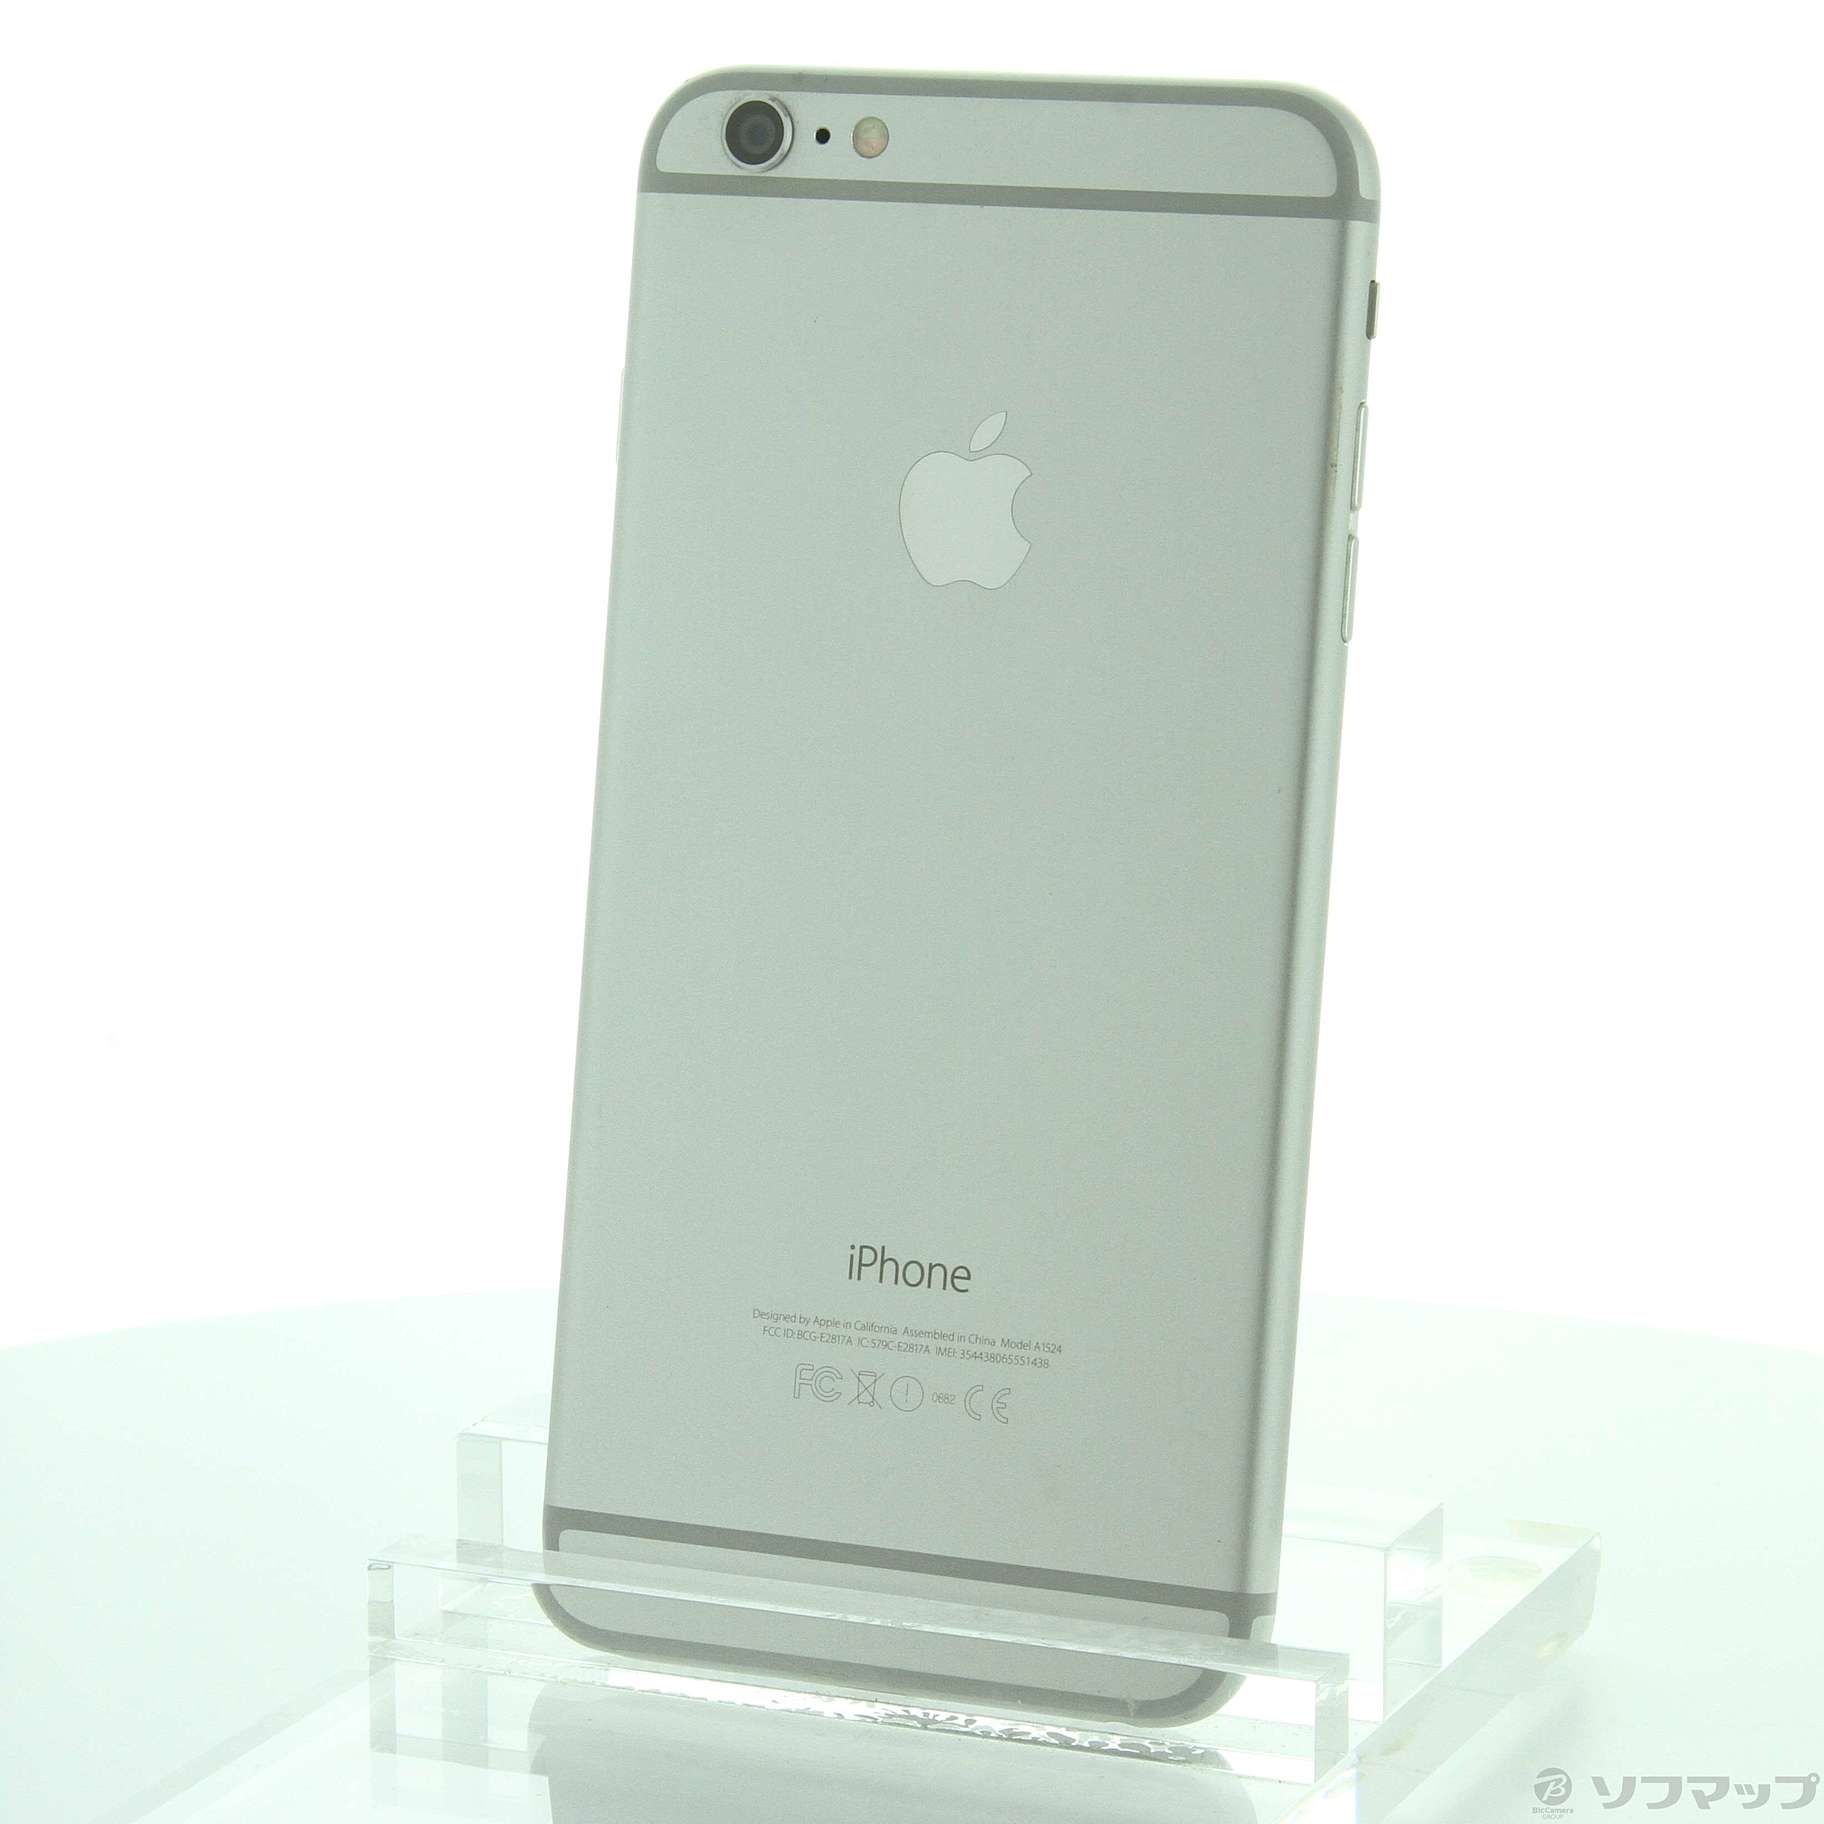 iPhone6 plus silver 64GB docomoスマートフォン/携帯電話